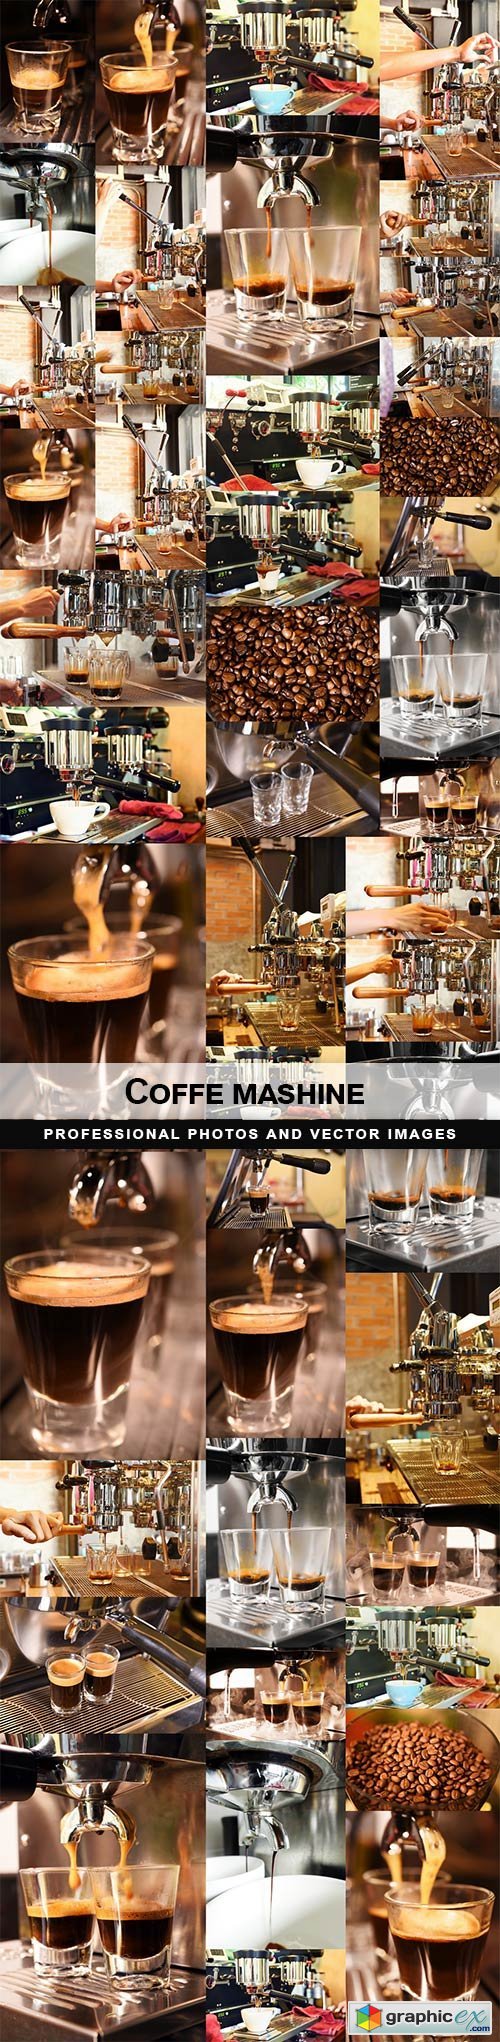 Coffe mashine